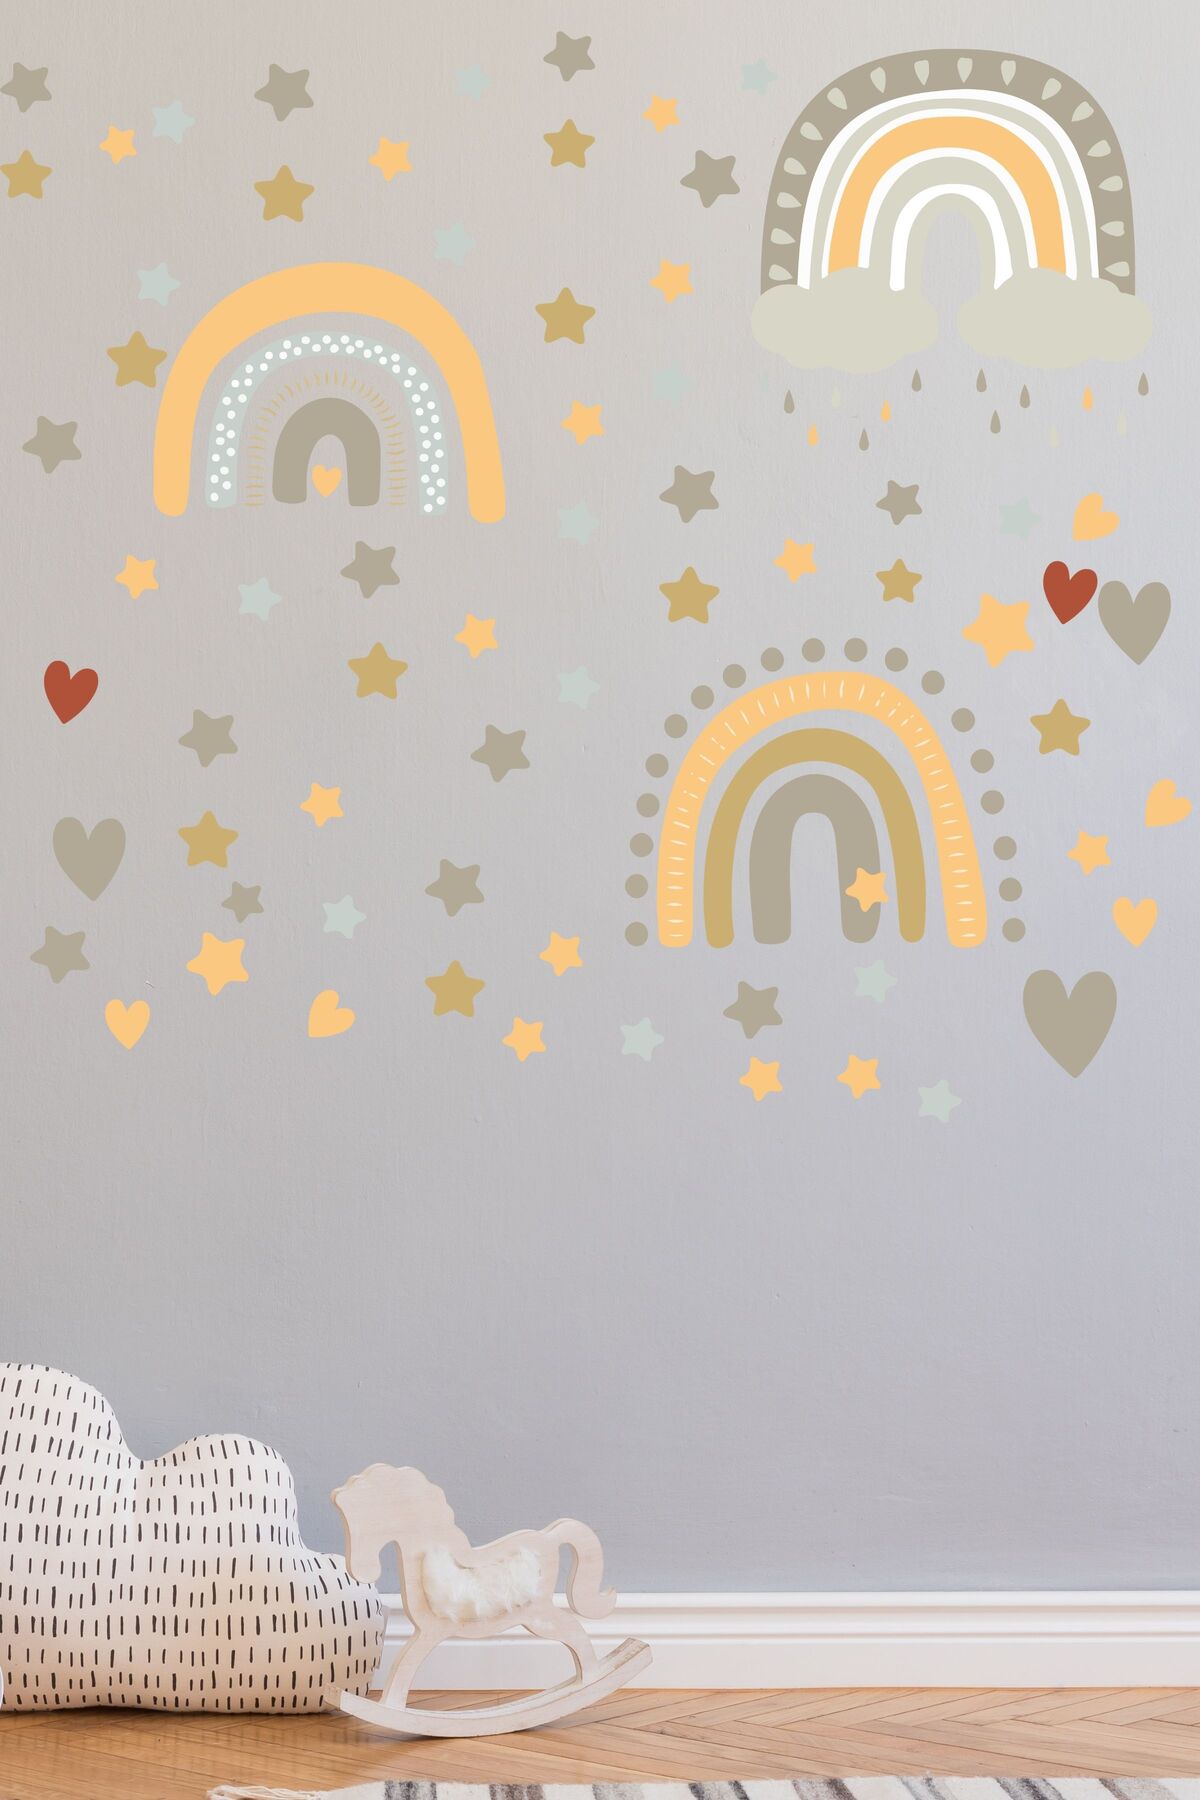 Çocuk Bebek Odası Sticker Seti, Boho Gökkuşağı Duvar Dekoru, Çocuk ve Bebek Odası Duvar Stickerı